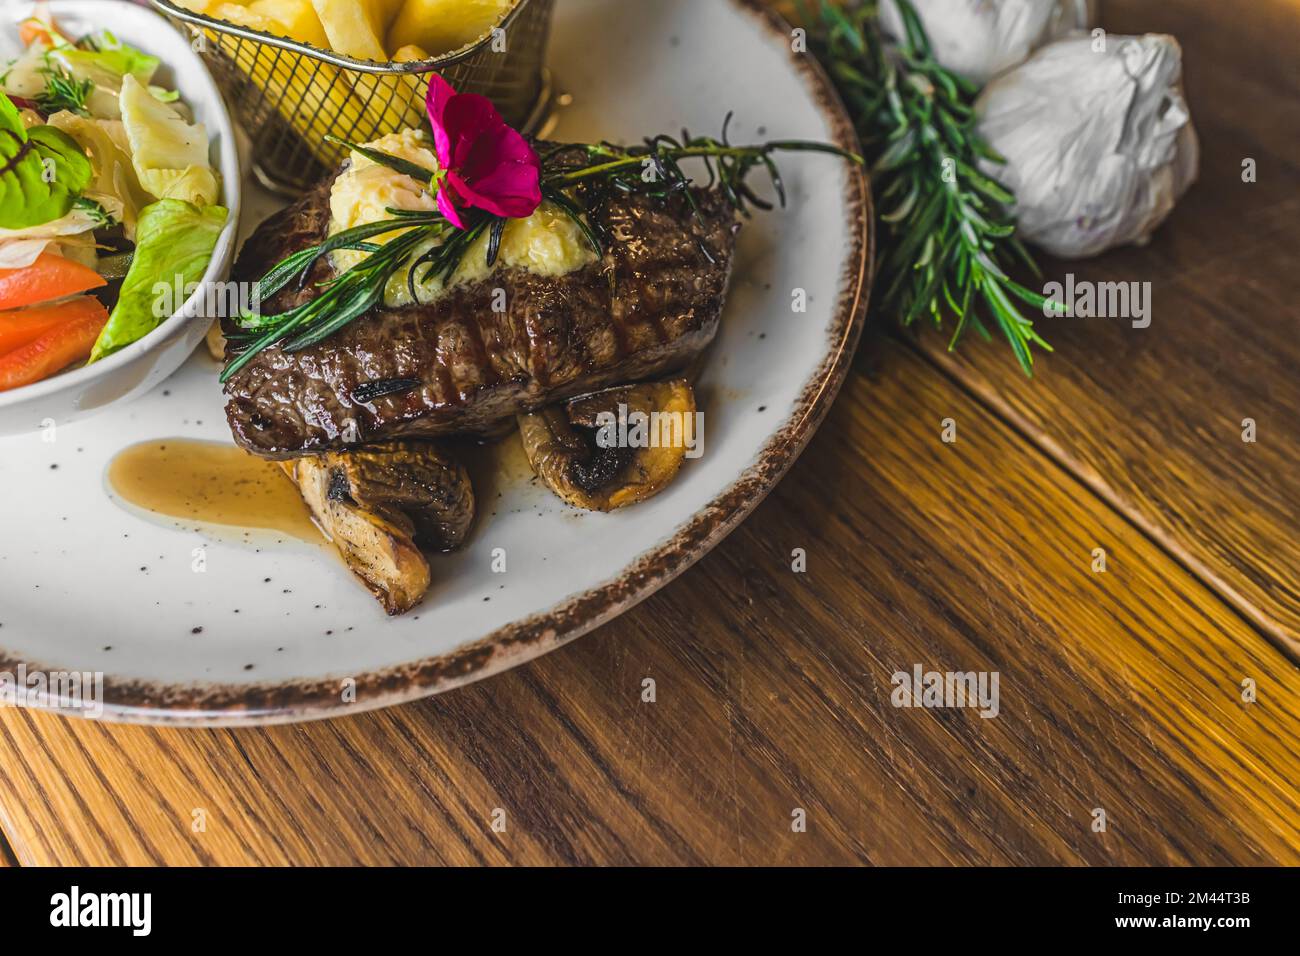 Vista dall'alto di una bistecca di Striploin sui funghi con insalata e patatine fritte sul lato. Piatto con piatto di carne su tavolo di legno. Foto di alta qualità Foto Stock